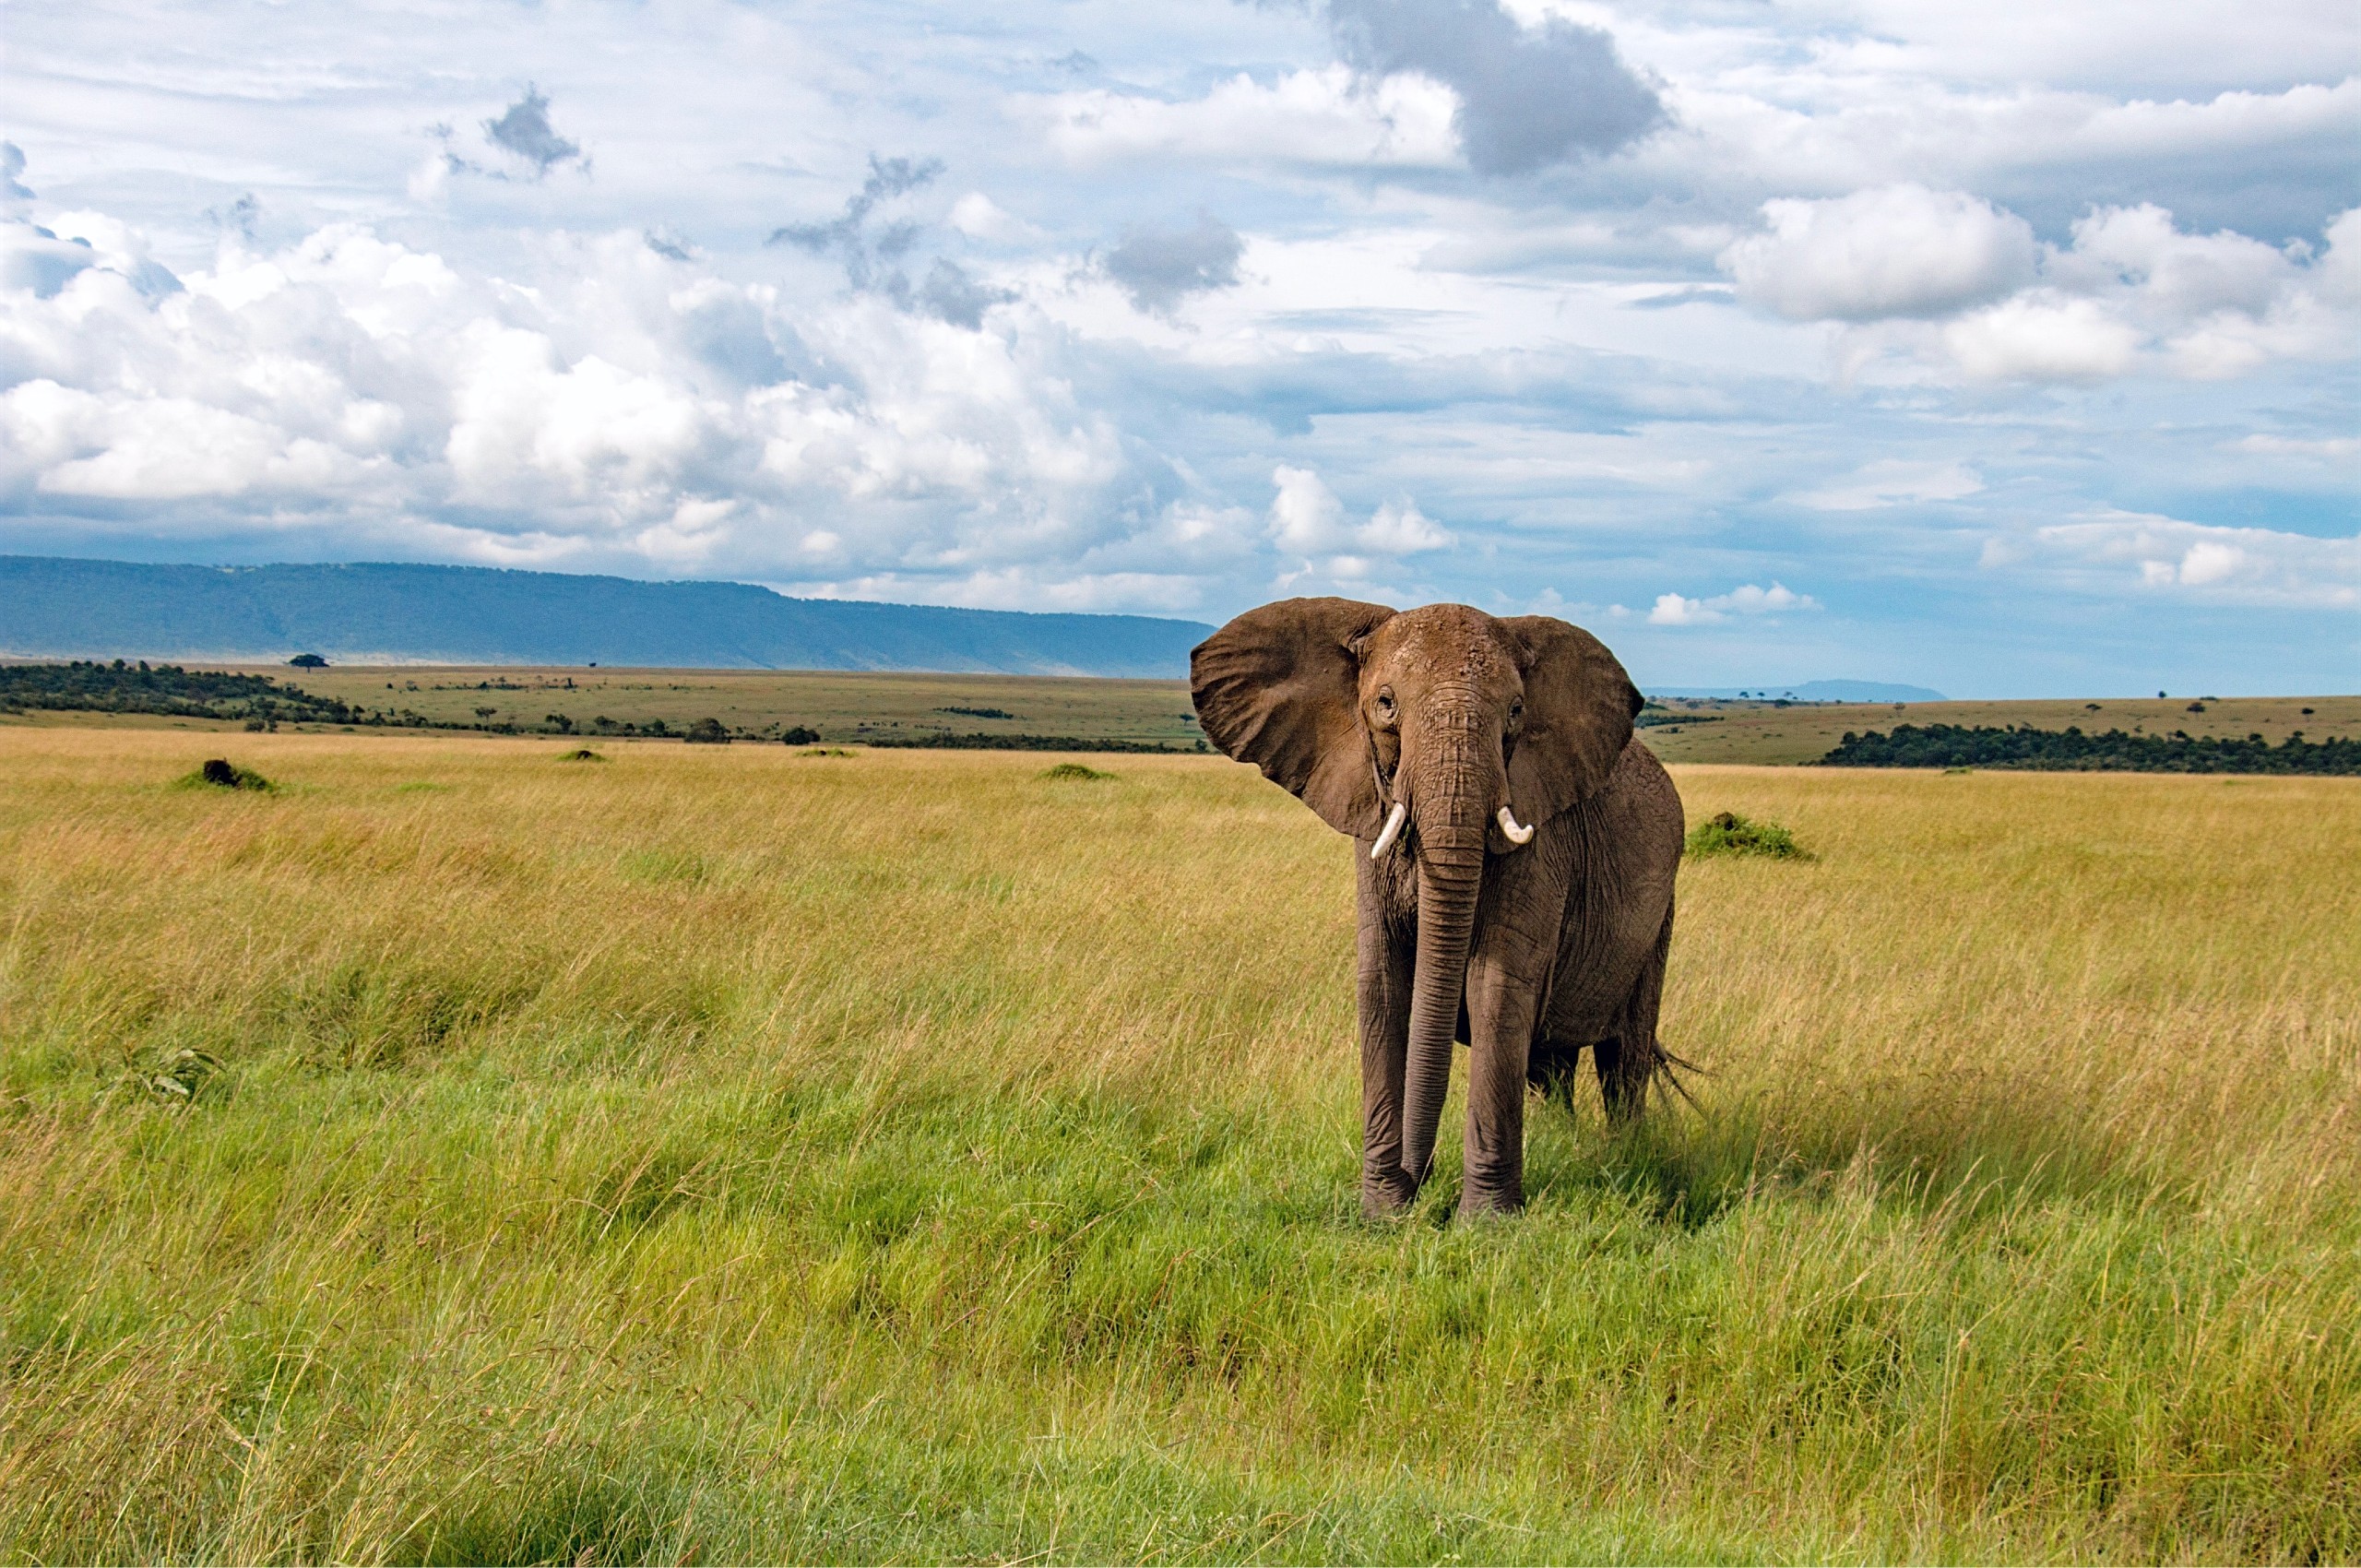 Friendly elephant met in Kenya